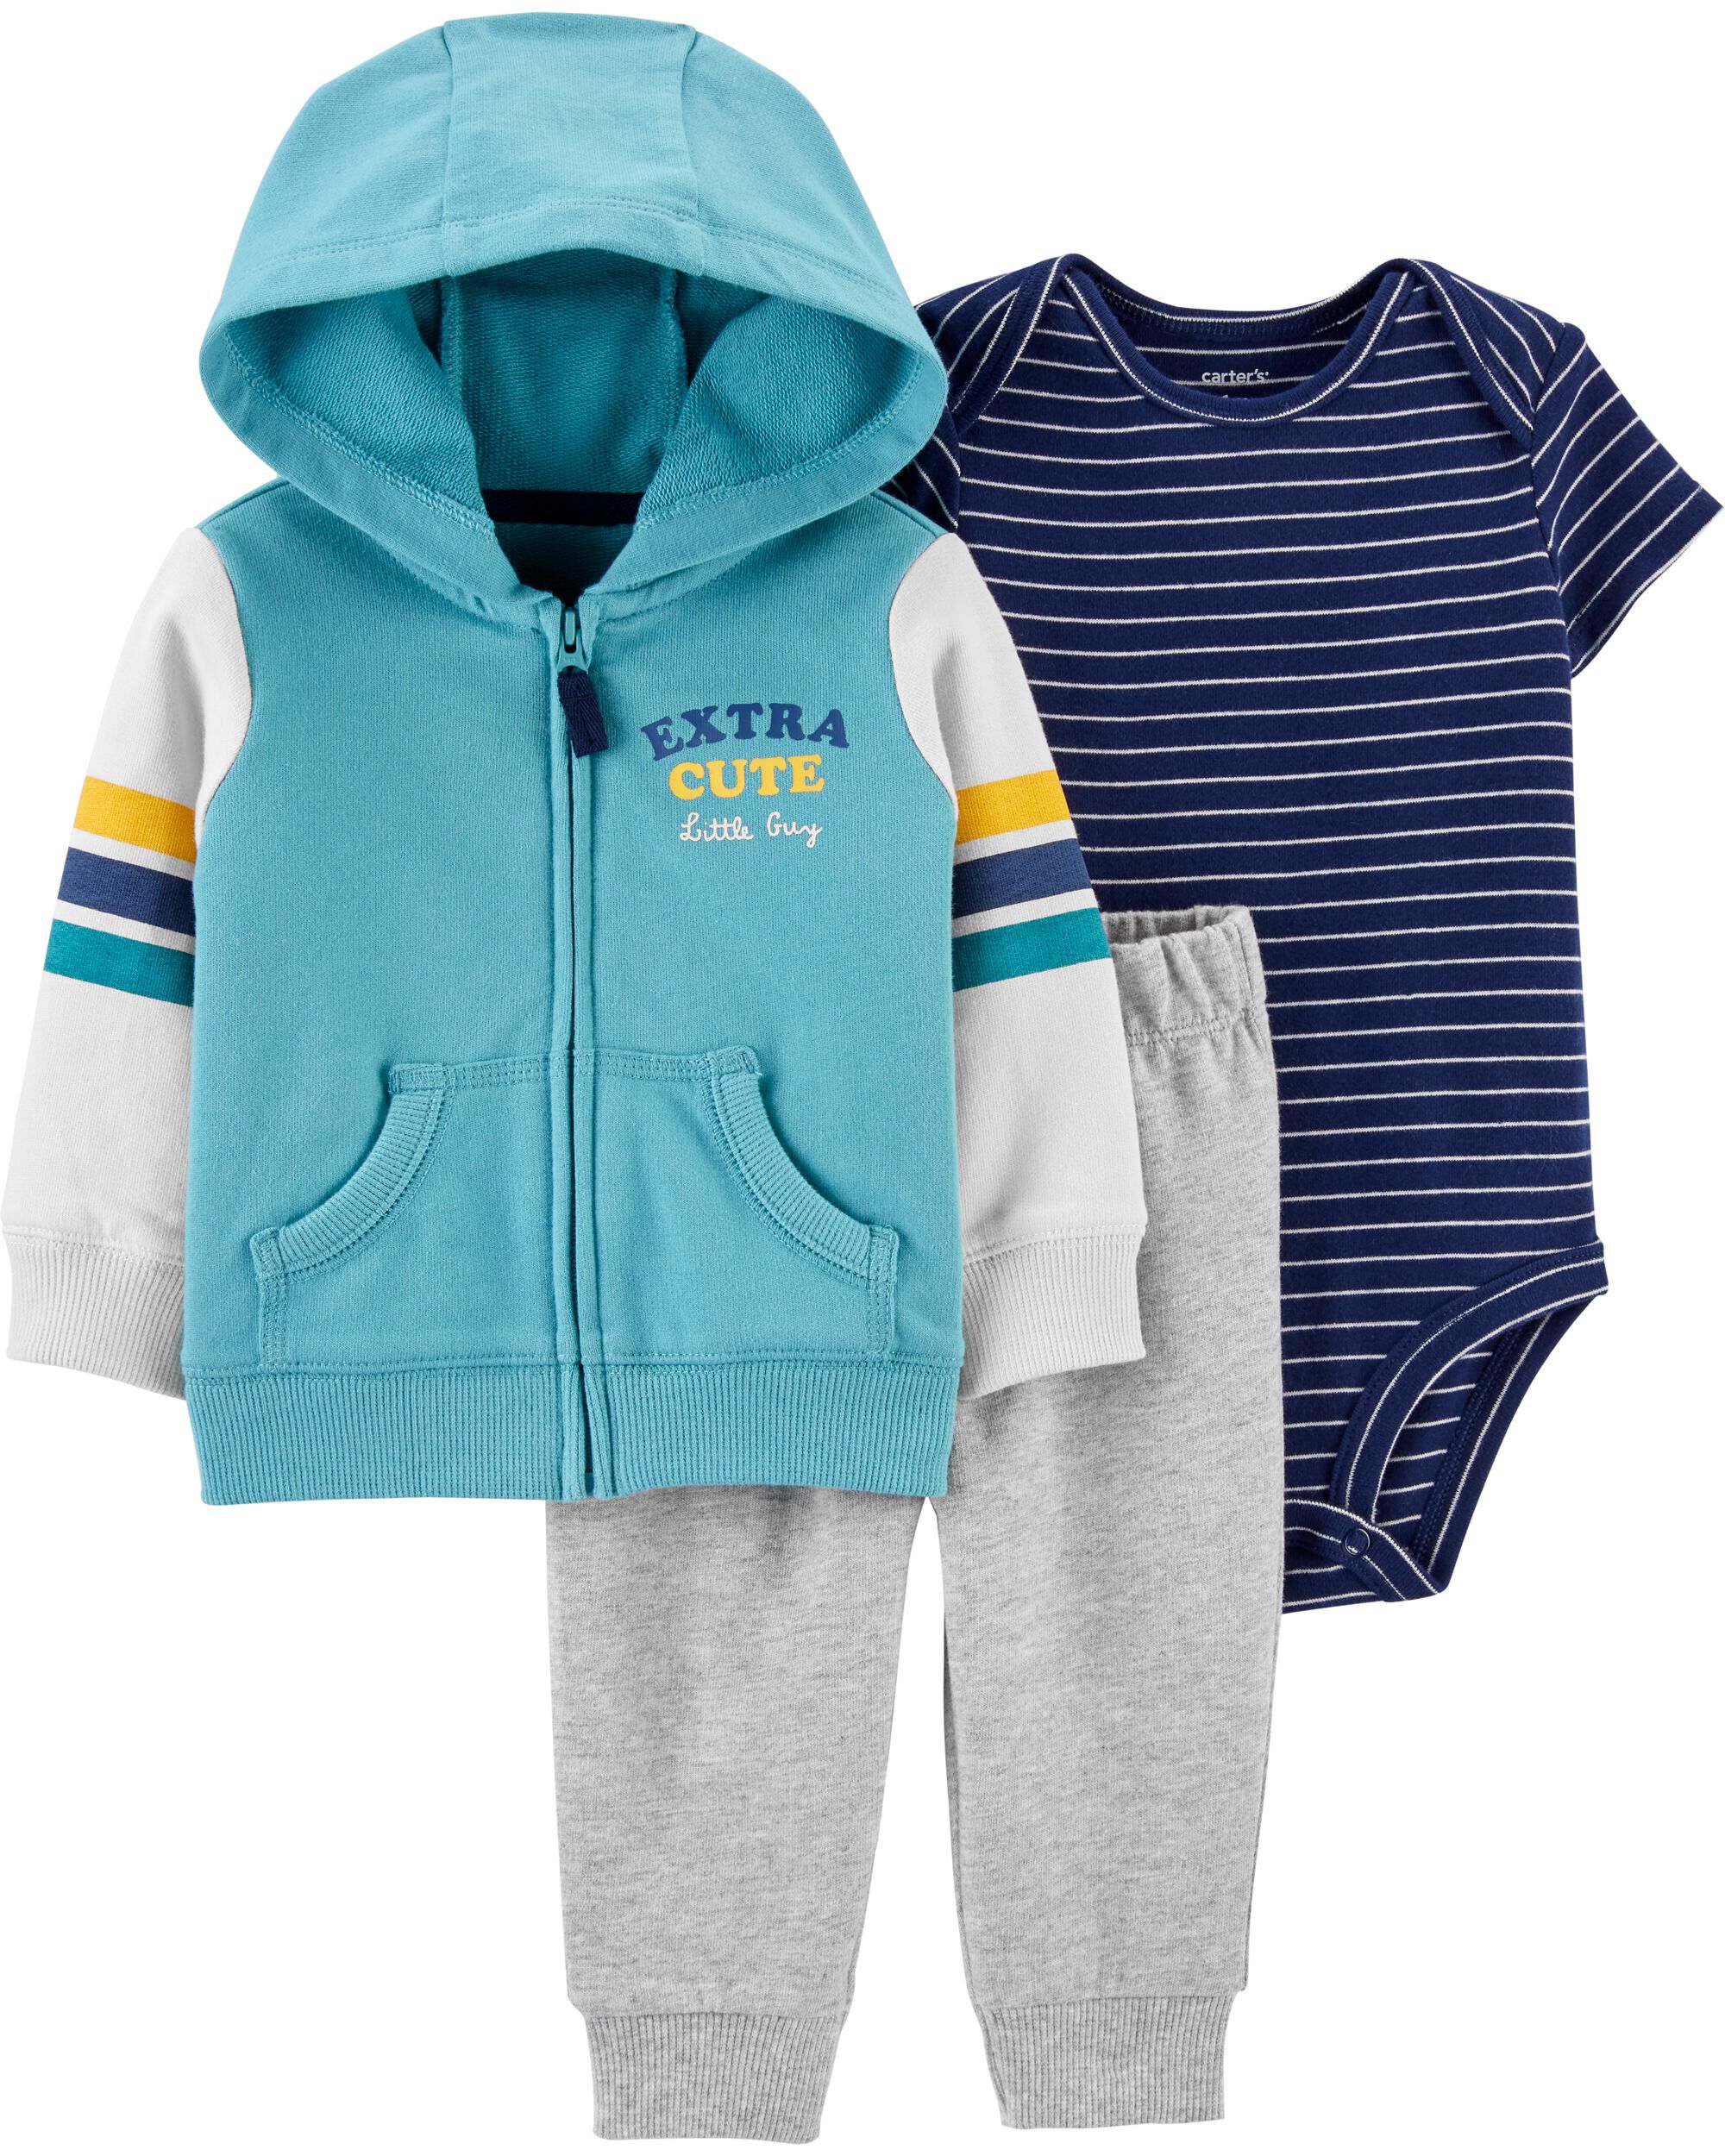 carter's infant boy clothes